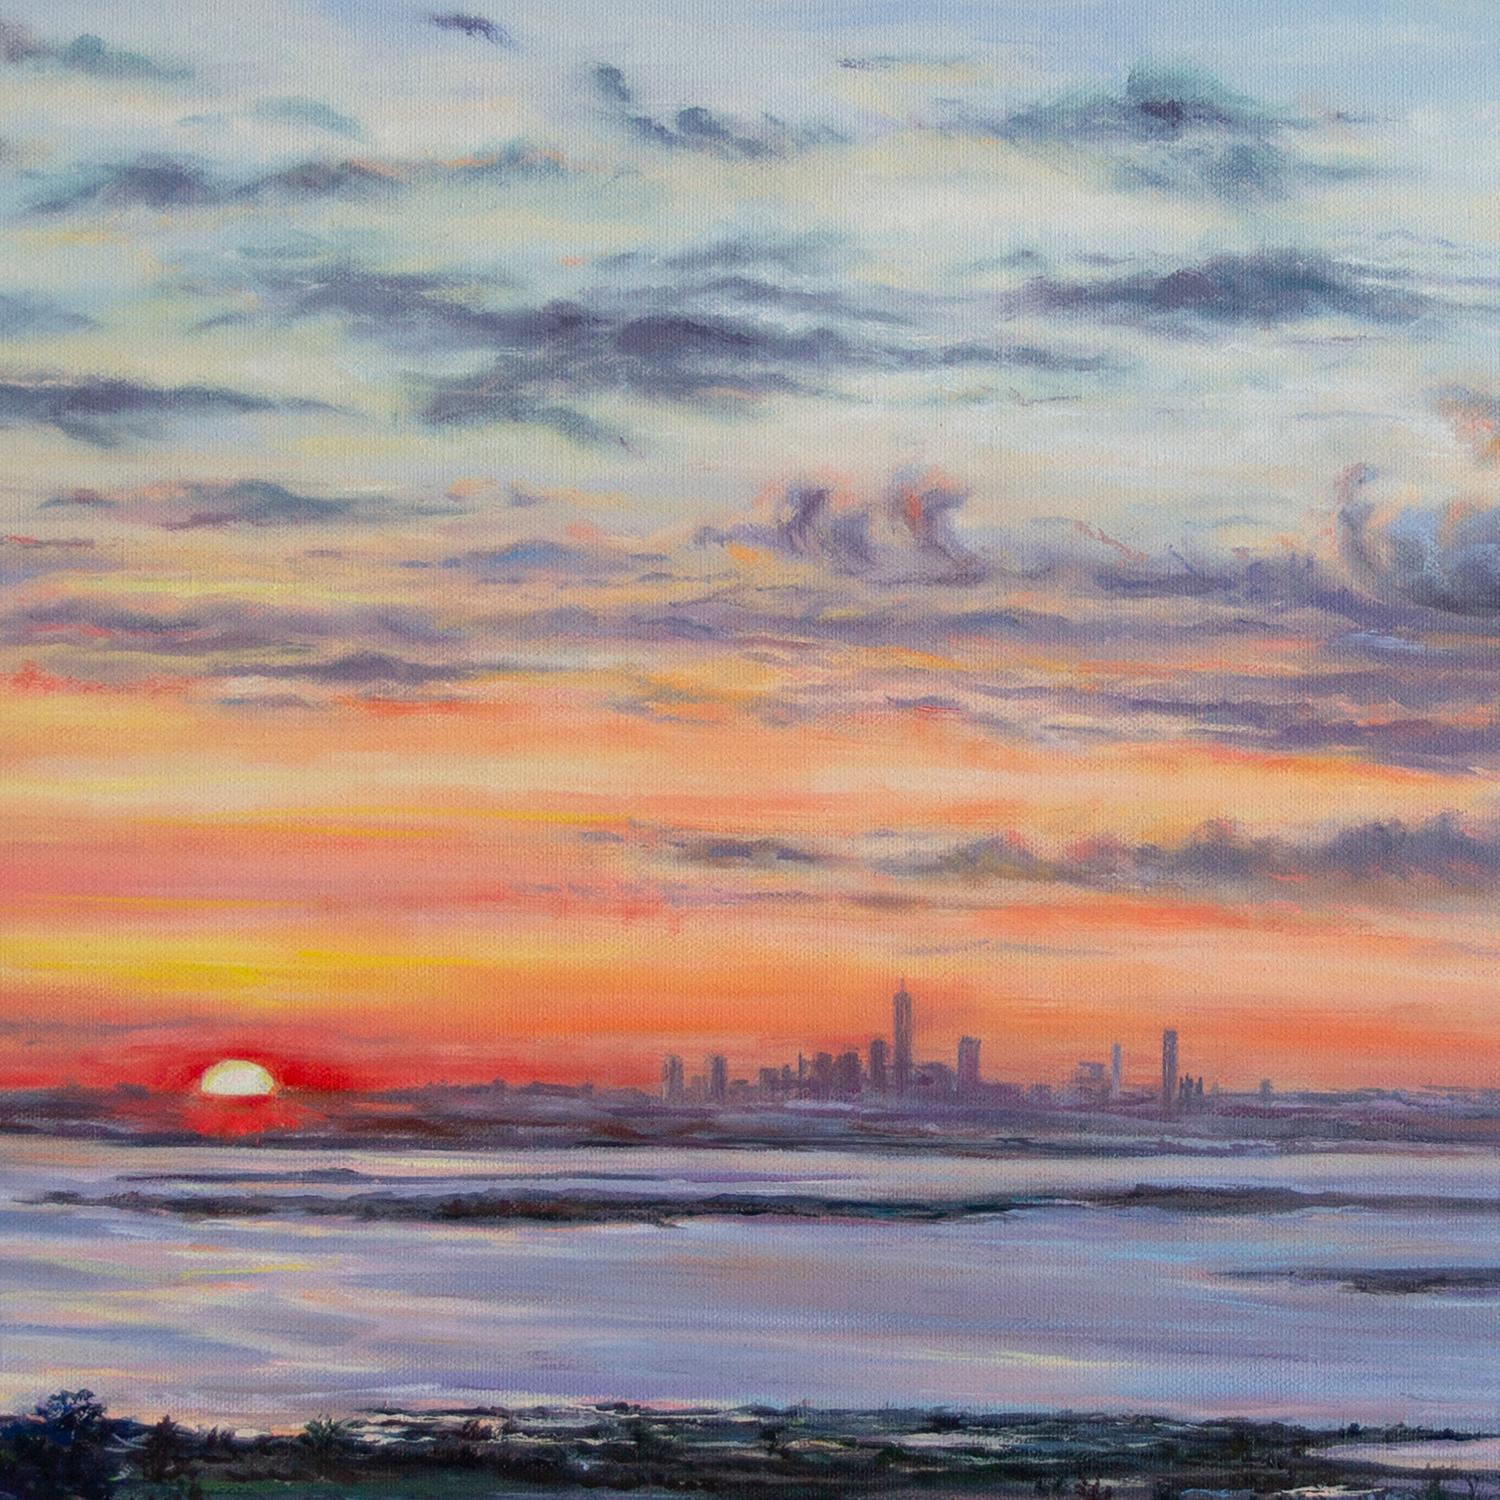 <p>Kommentare des Künstlers<br>Abends in den Vororten ist die Silhouette von New York City schon von weitem zu sehen. Die Stadt ruht zwischen dem strahlenden Himmel und dem ruhigen Meer. Wenn die Sonne untergeht und sich langsam dem Horizont nähert,